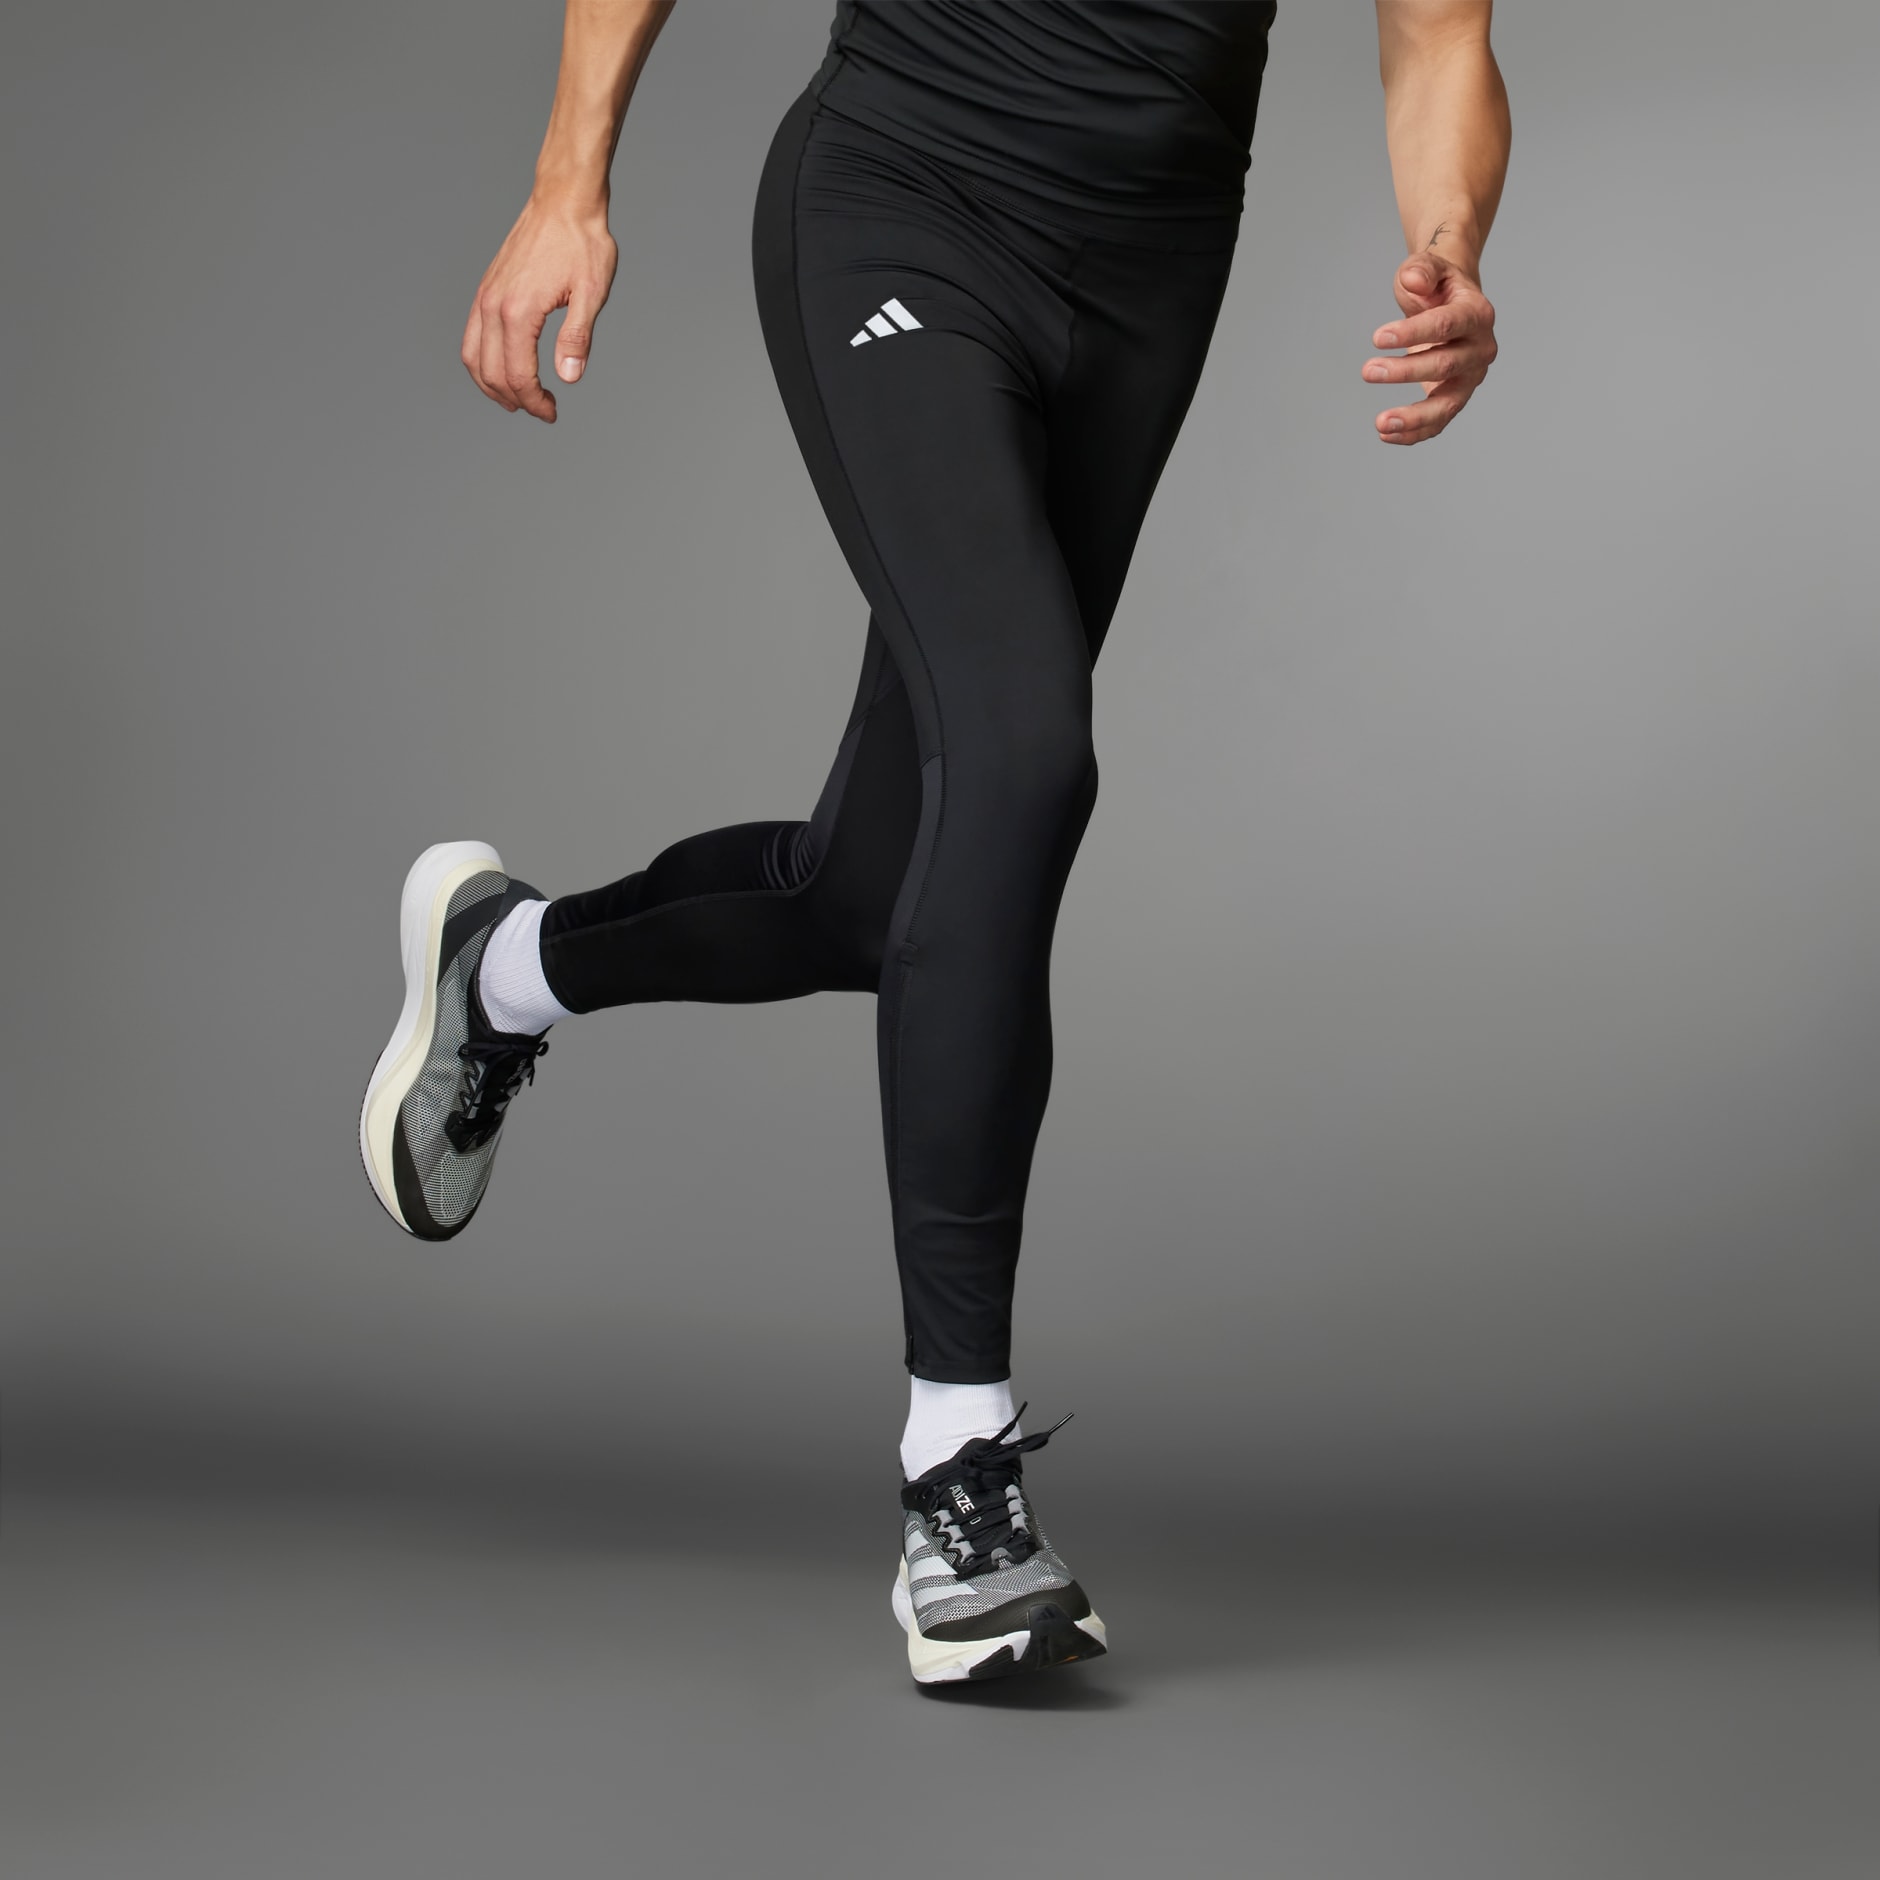 Adidas Originals Supernova Men's Running Long Tights Black